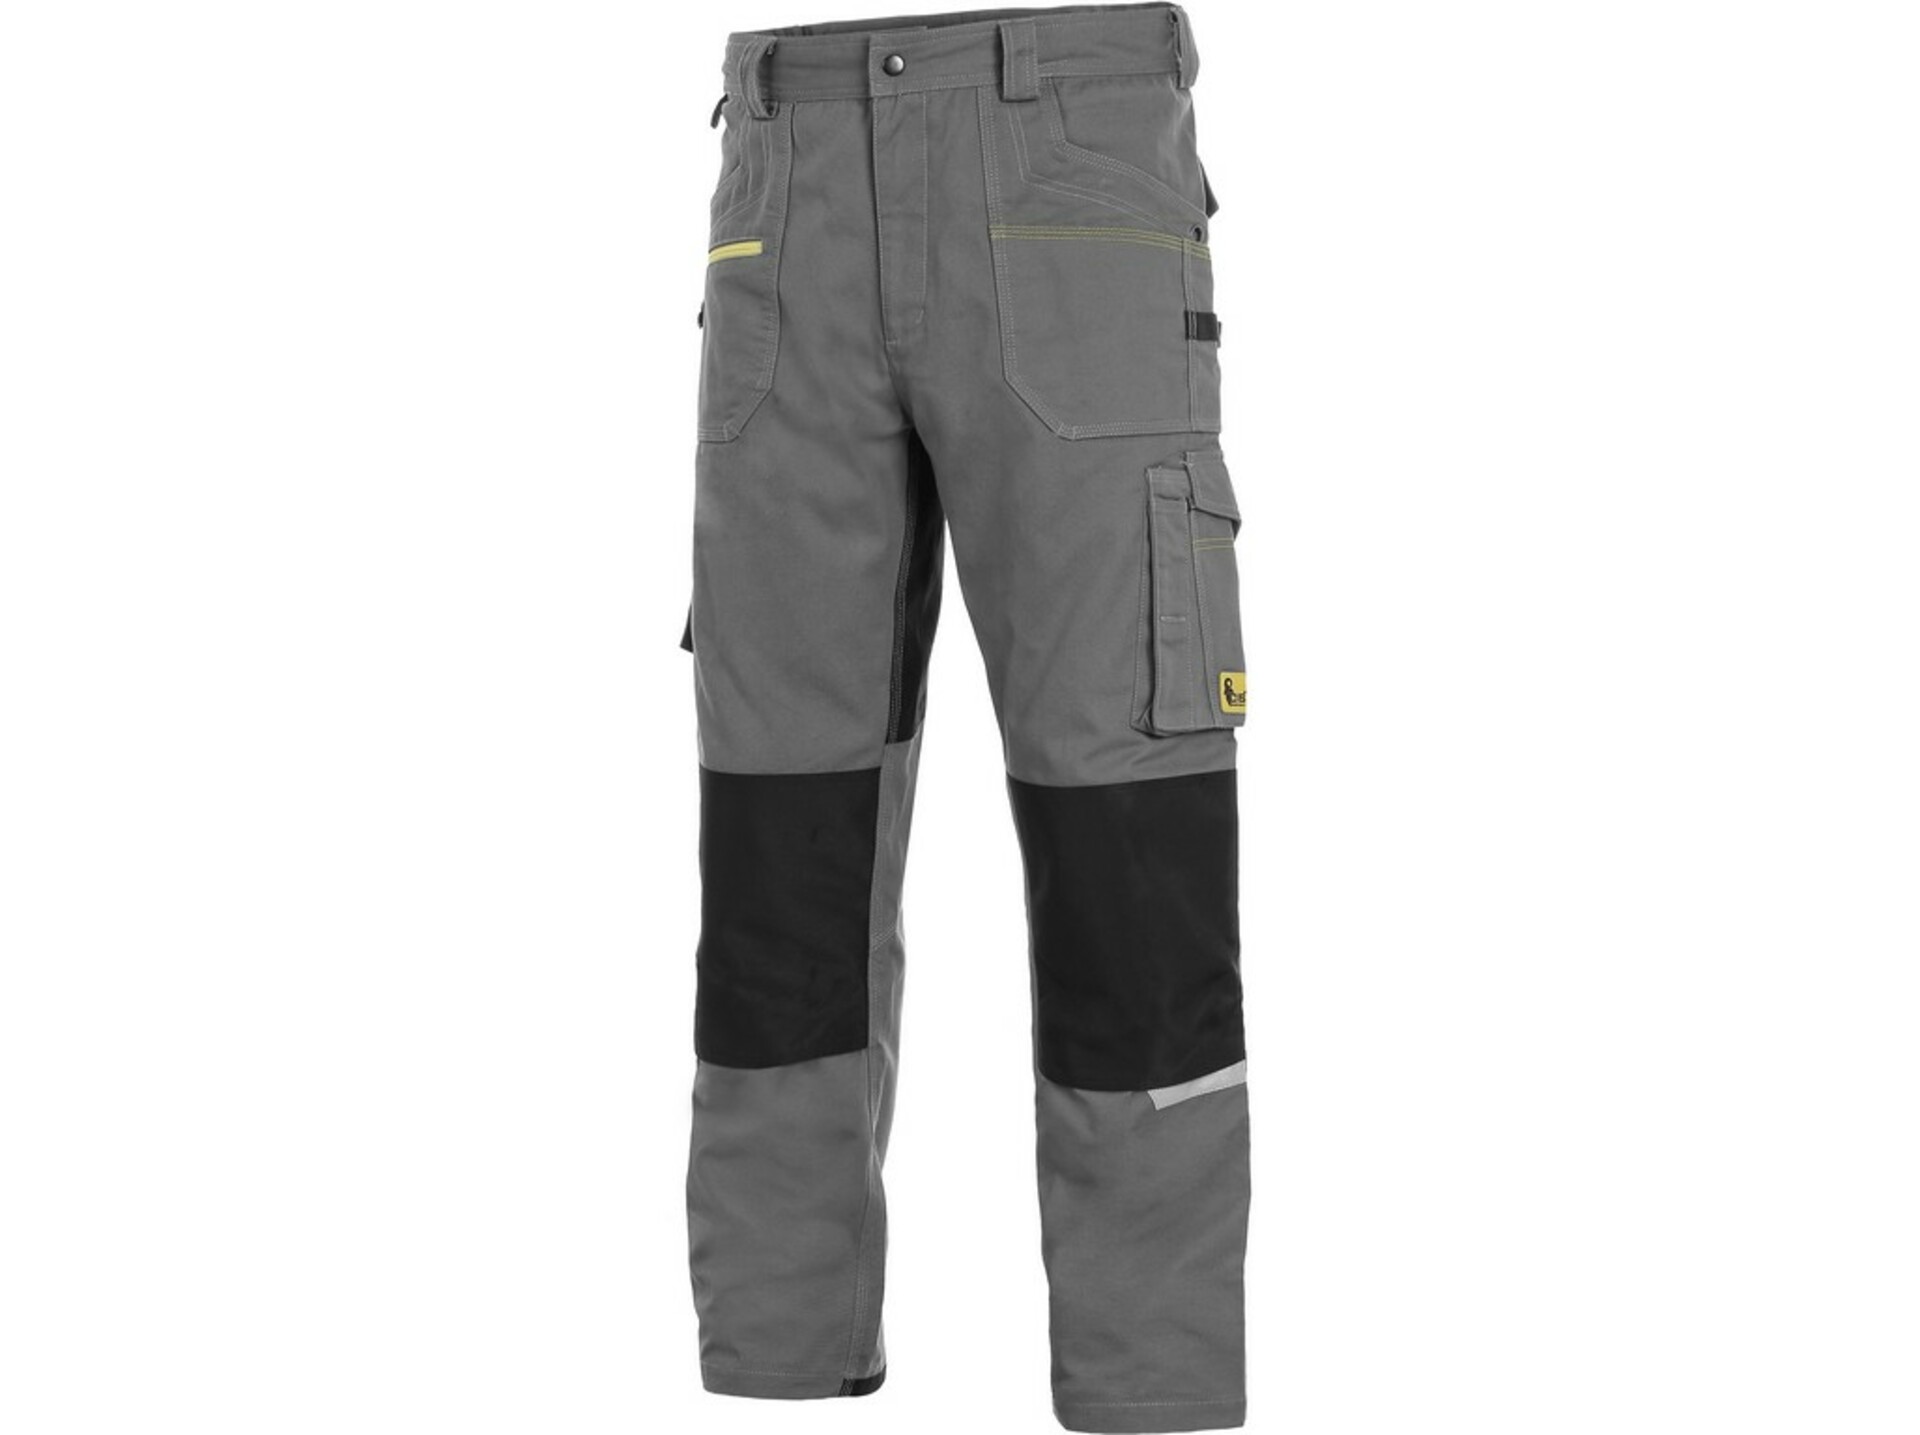 CXS STRETCH pánské Kalhoty pracovní do pasu šedá/černá 62 + Bezplatné vrácení zboží